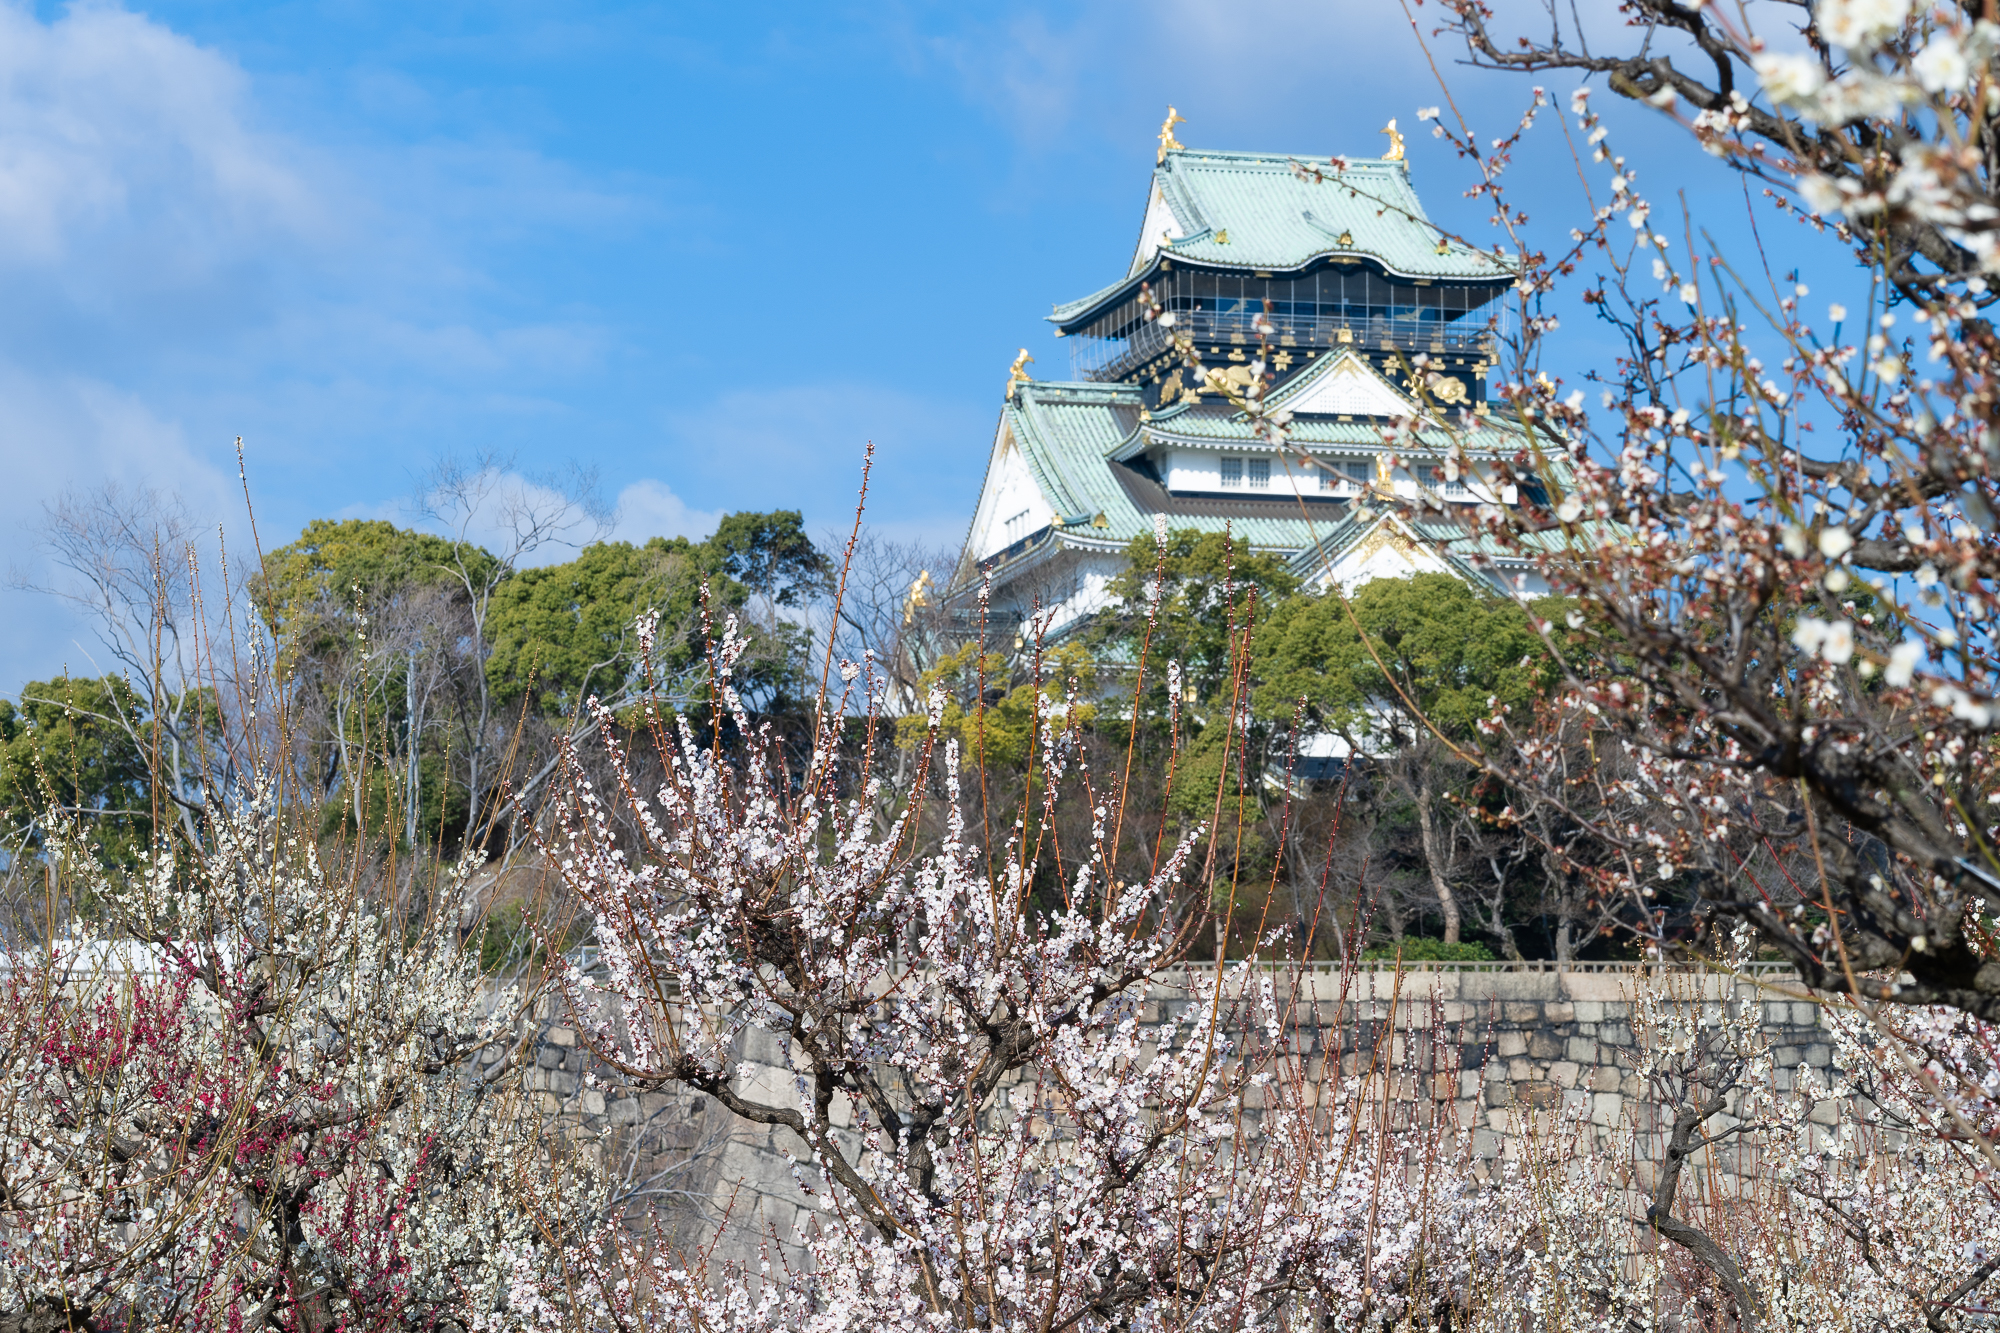 大阪城公園 梅林 21年の開花情報 見ごろとアクセス方法について